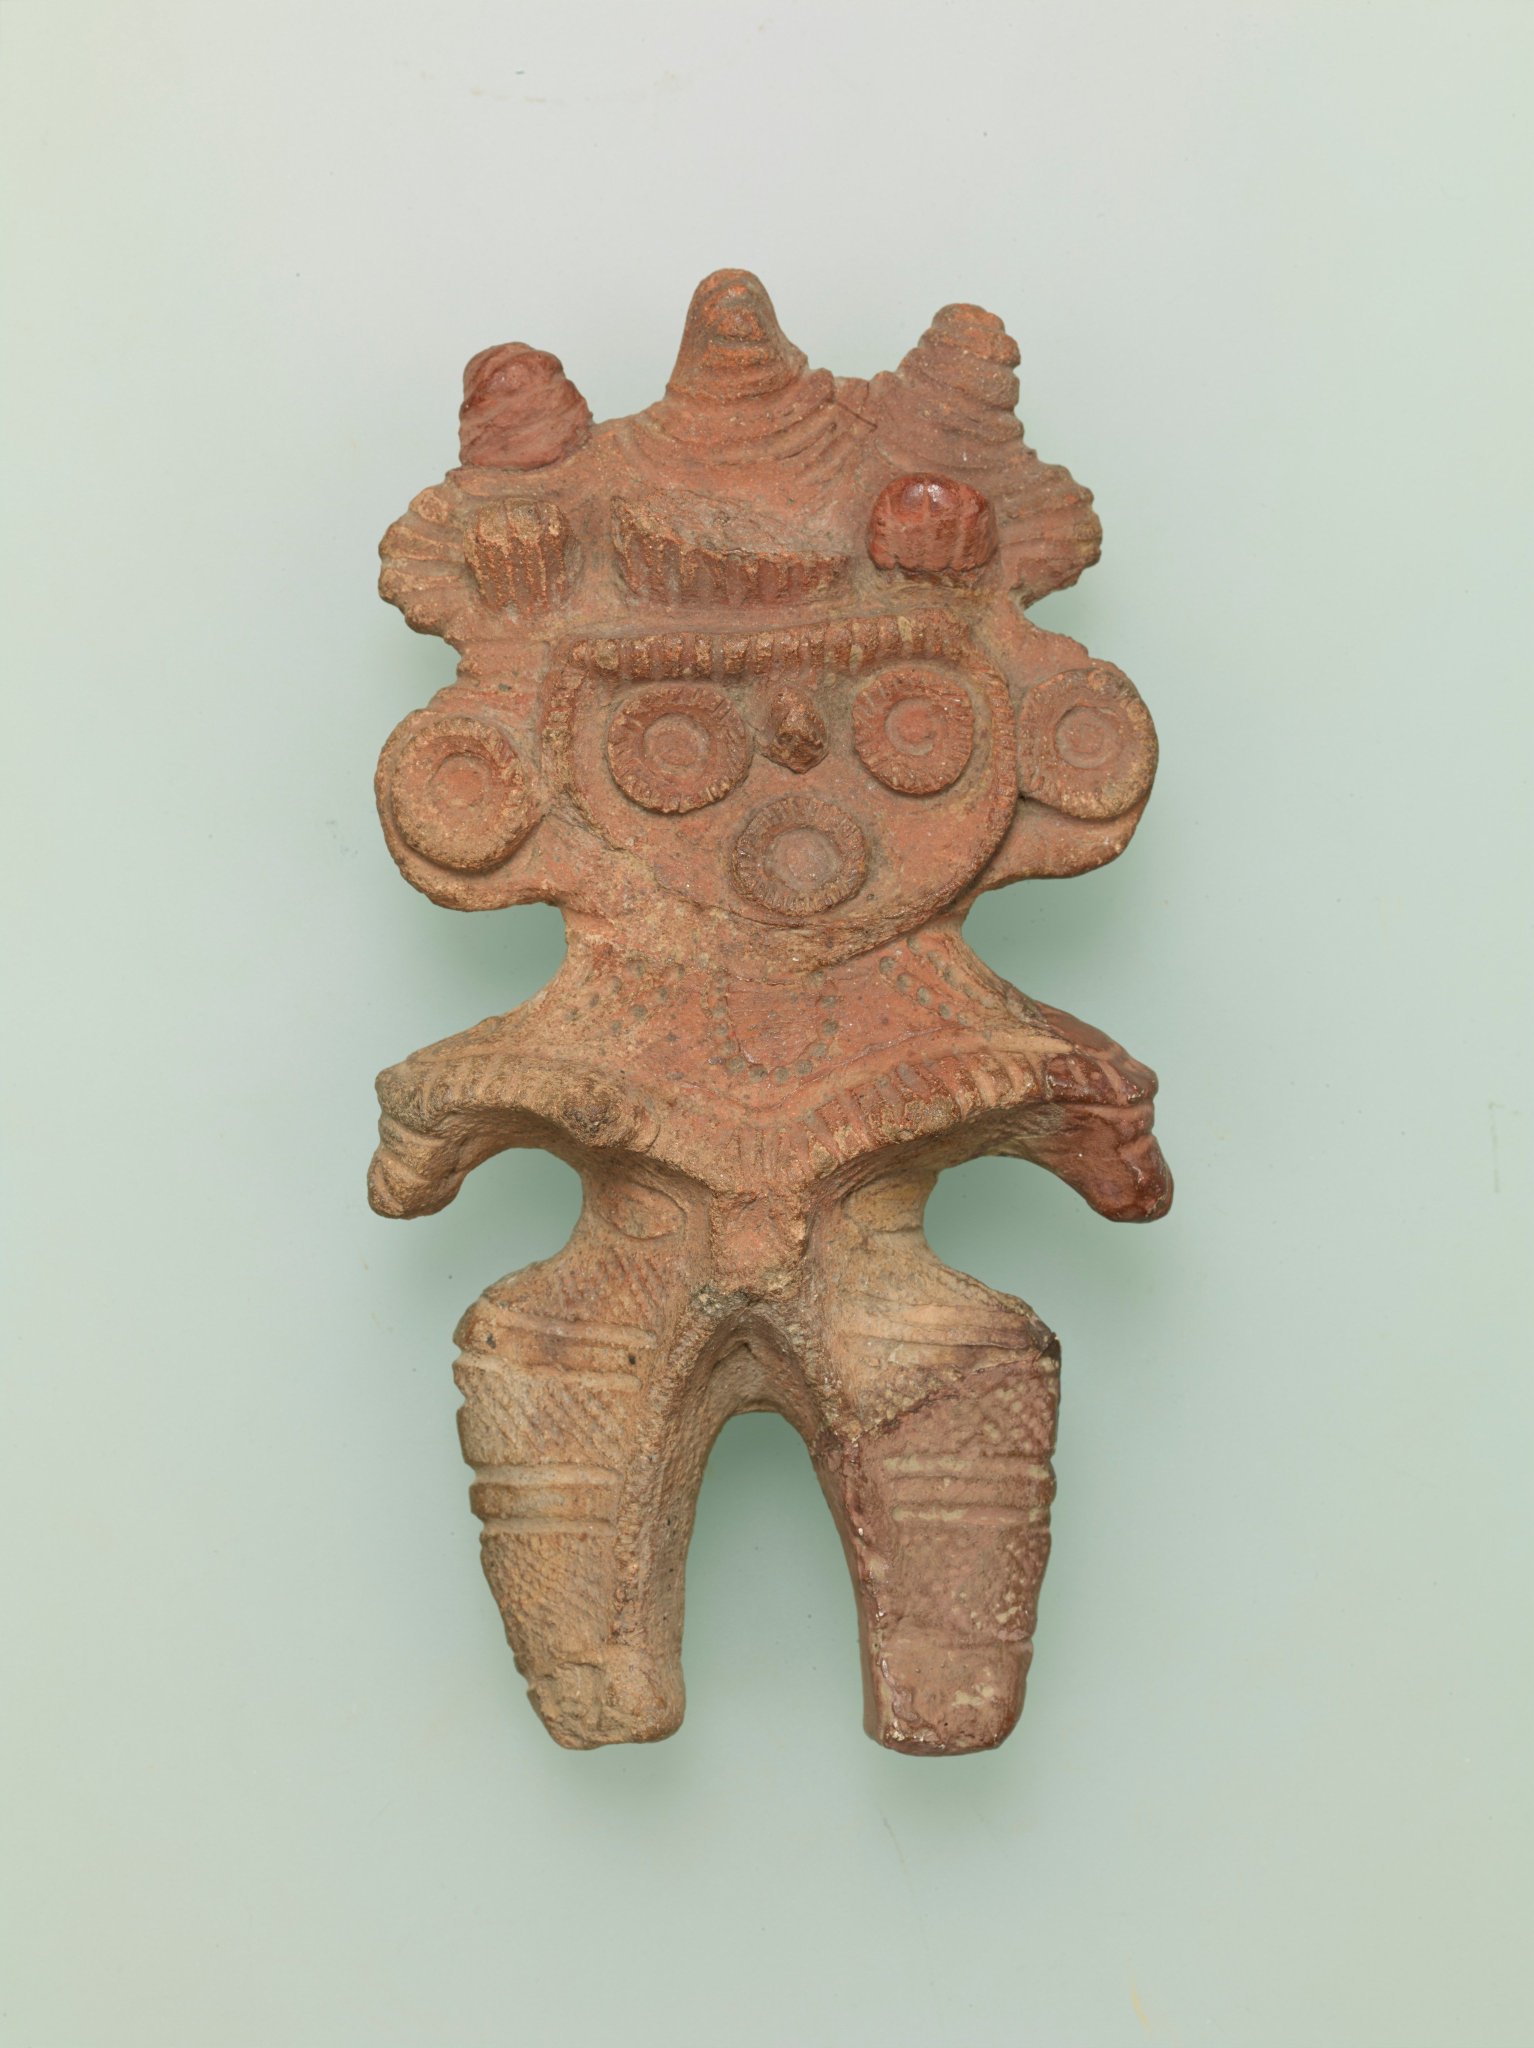 岩手県立博物館 on Twitter: "「遮光器土偶の世界」展から。 遮光器土偶が作られ始めたころ、関東地方ではミミズク土偶を使っていました